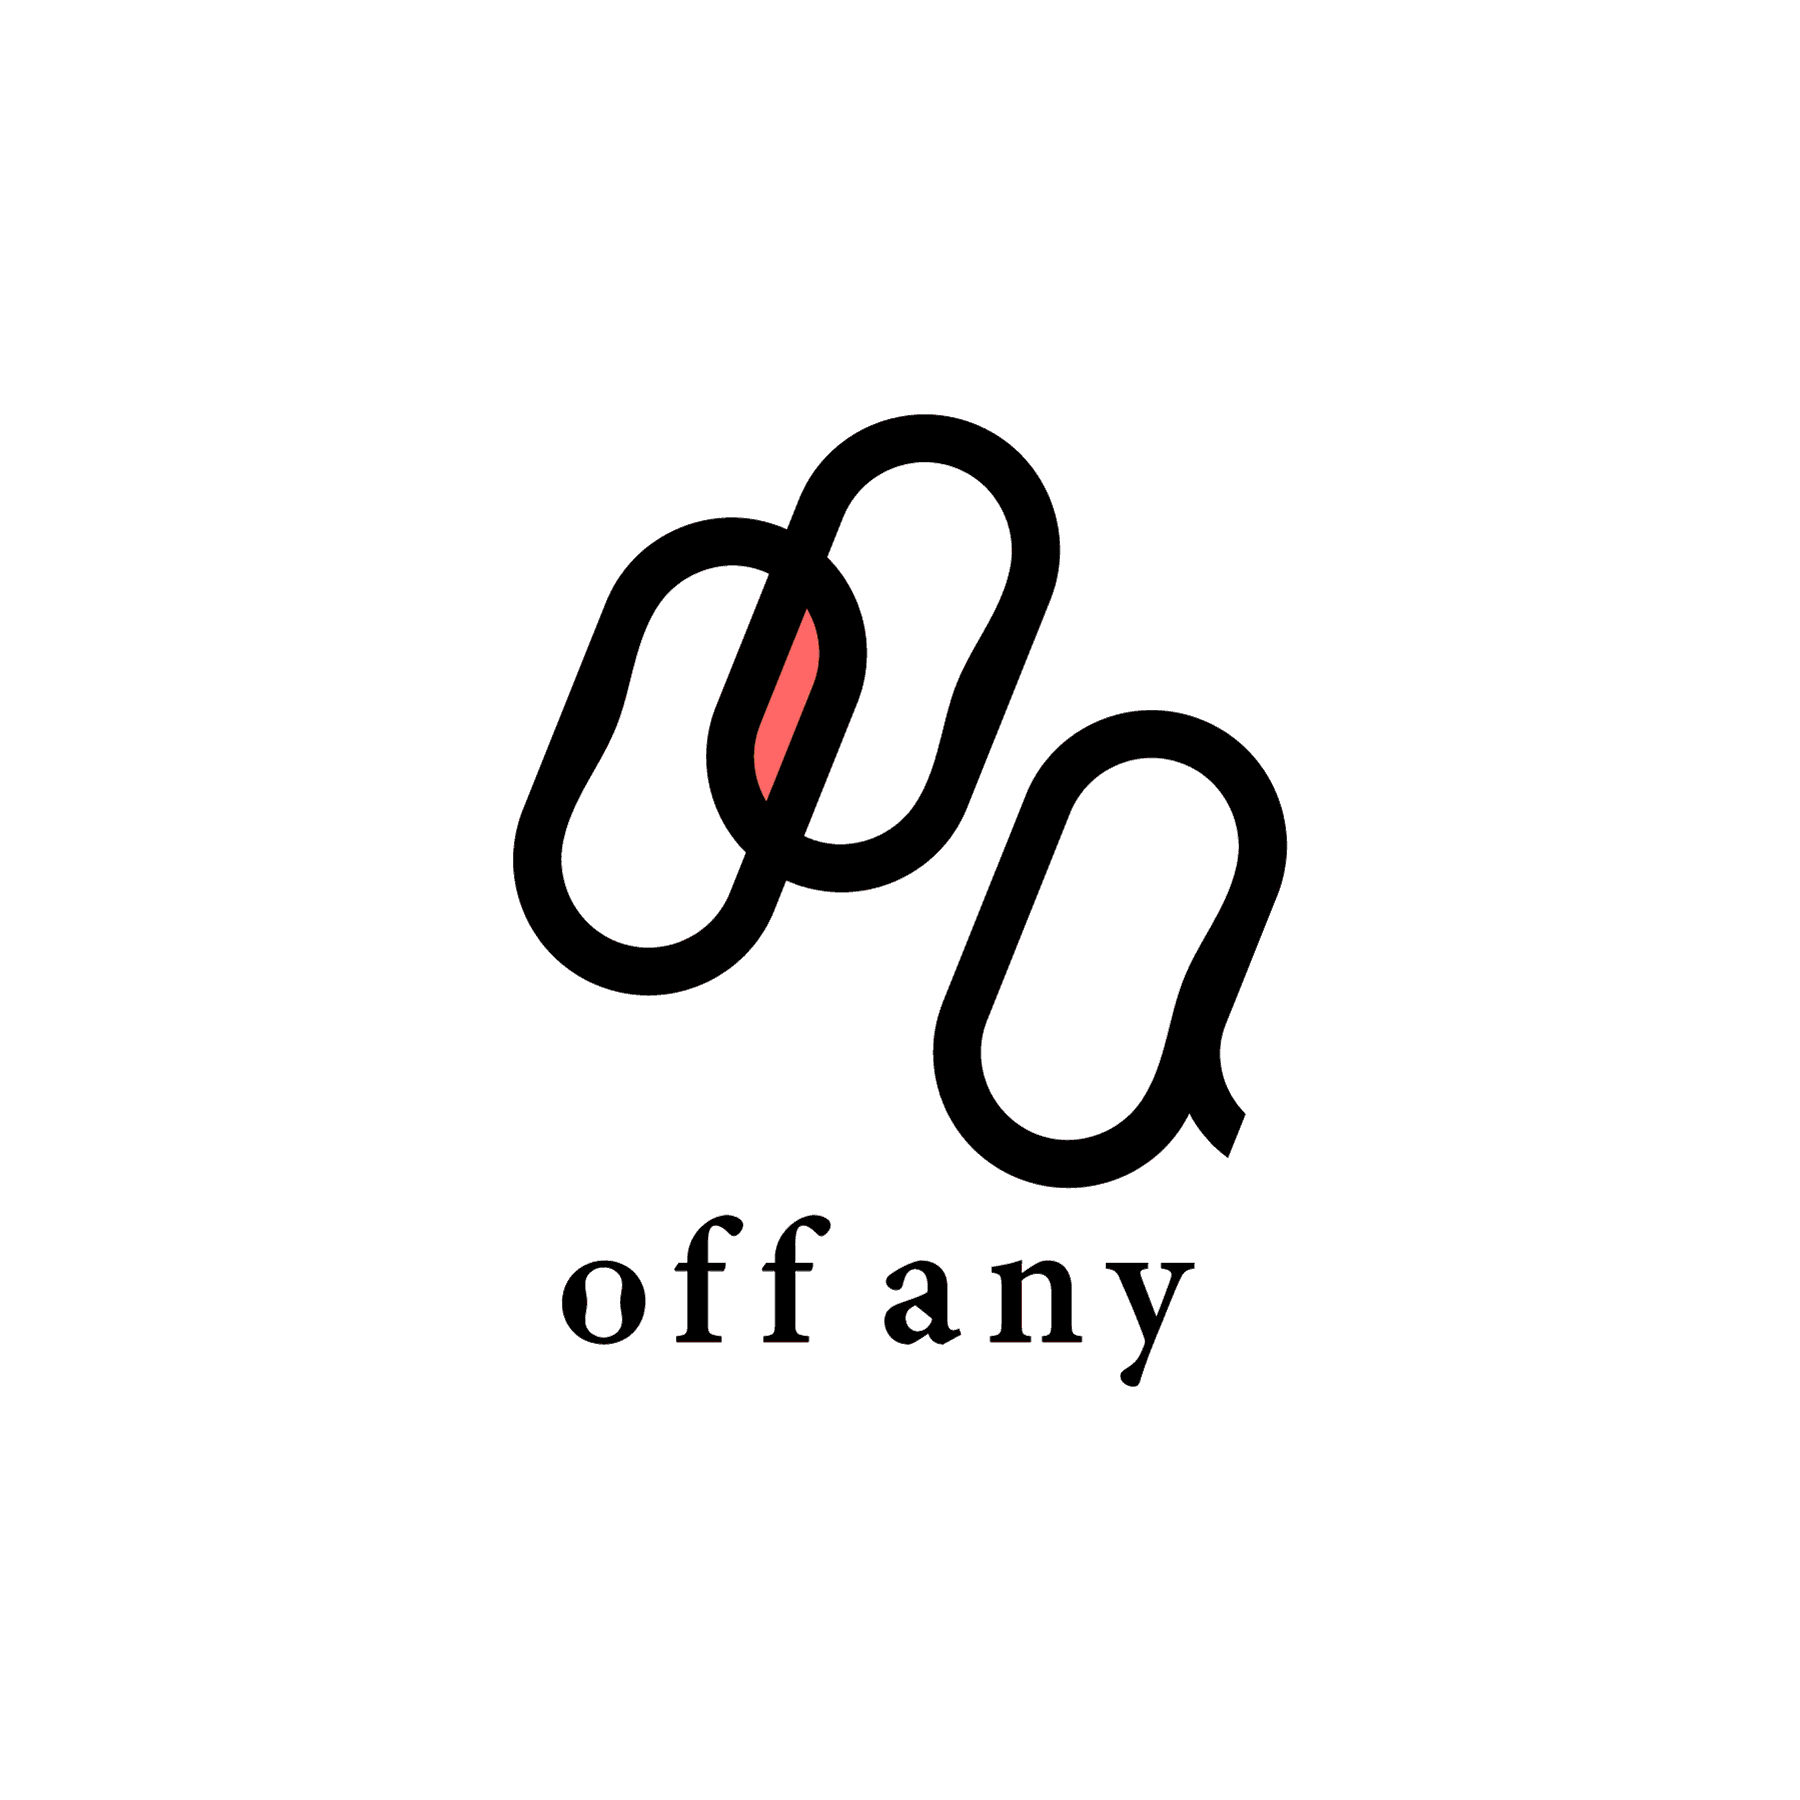 株式会社offany